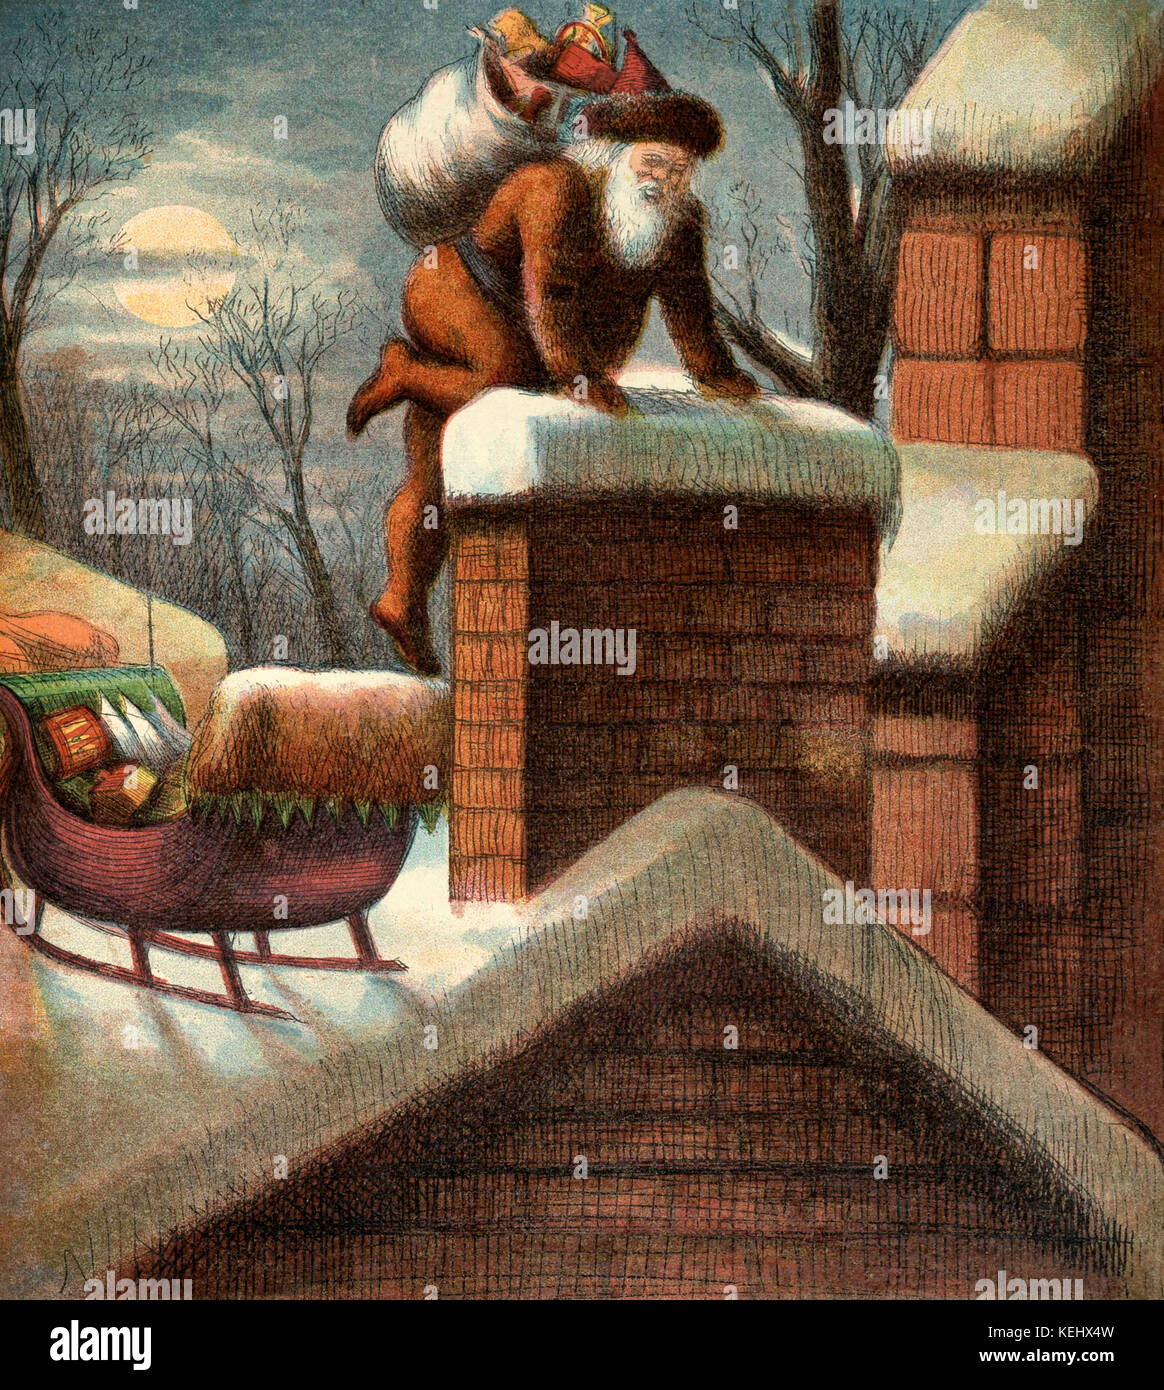 Ilustración vintage de Santa Claus bajando por una chimenea. Foto de stock